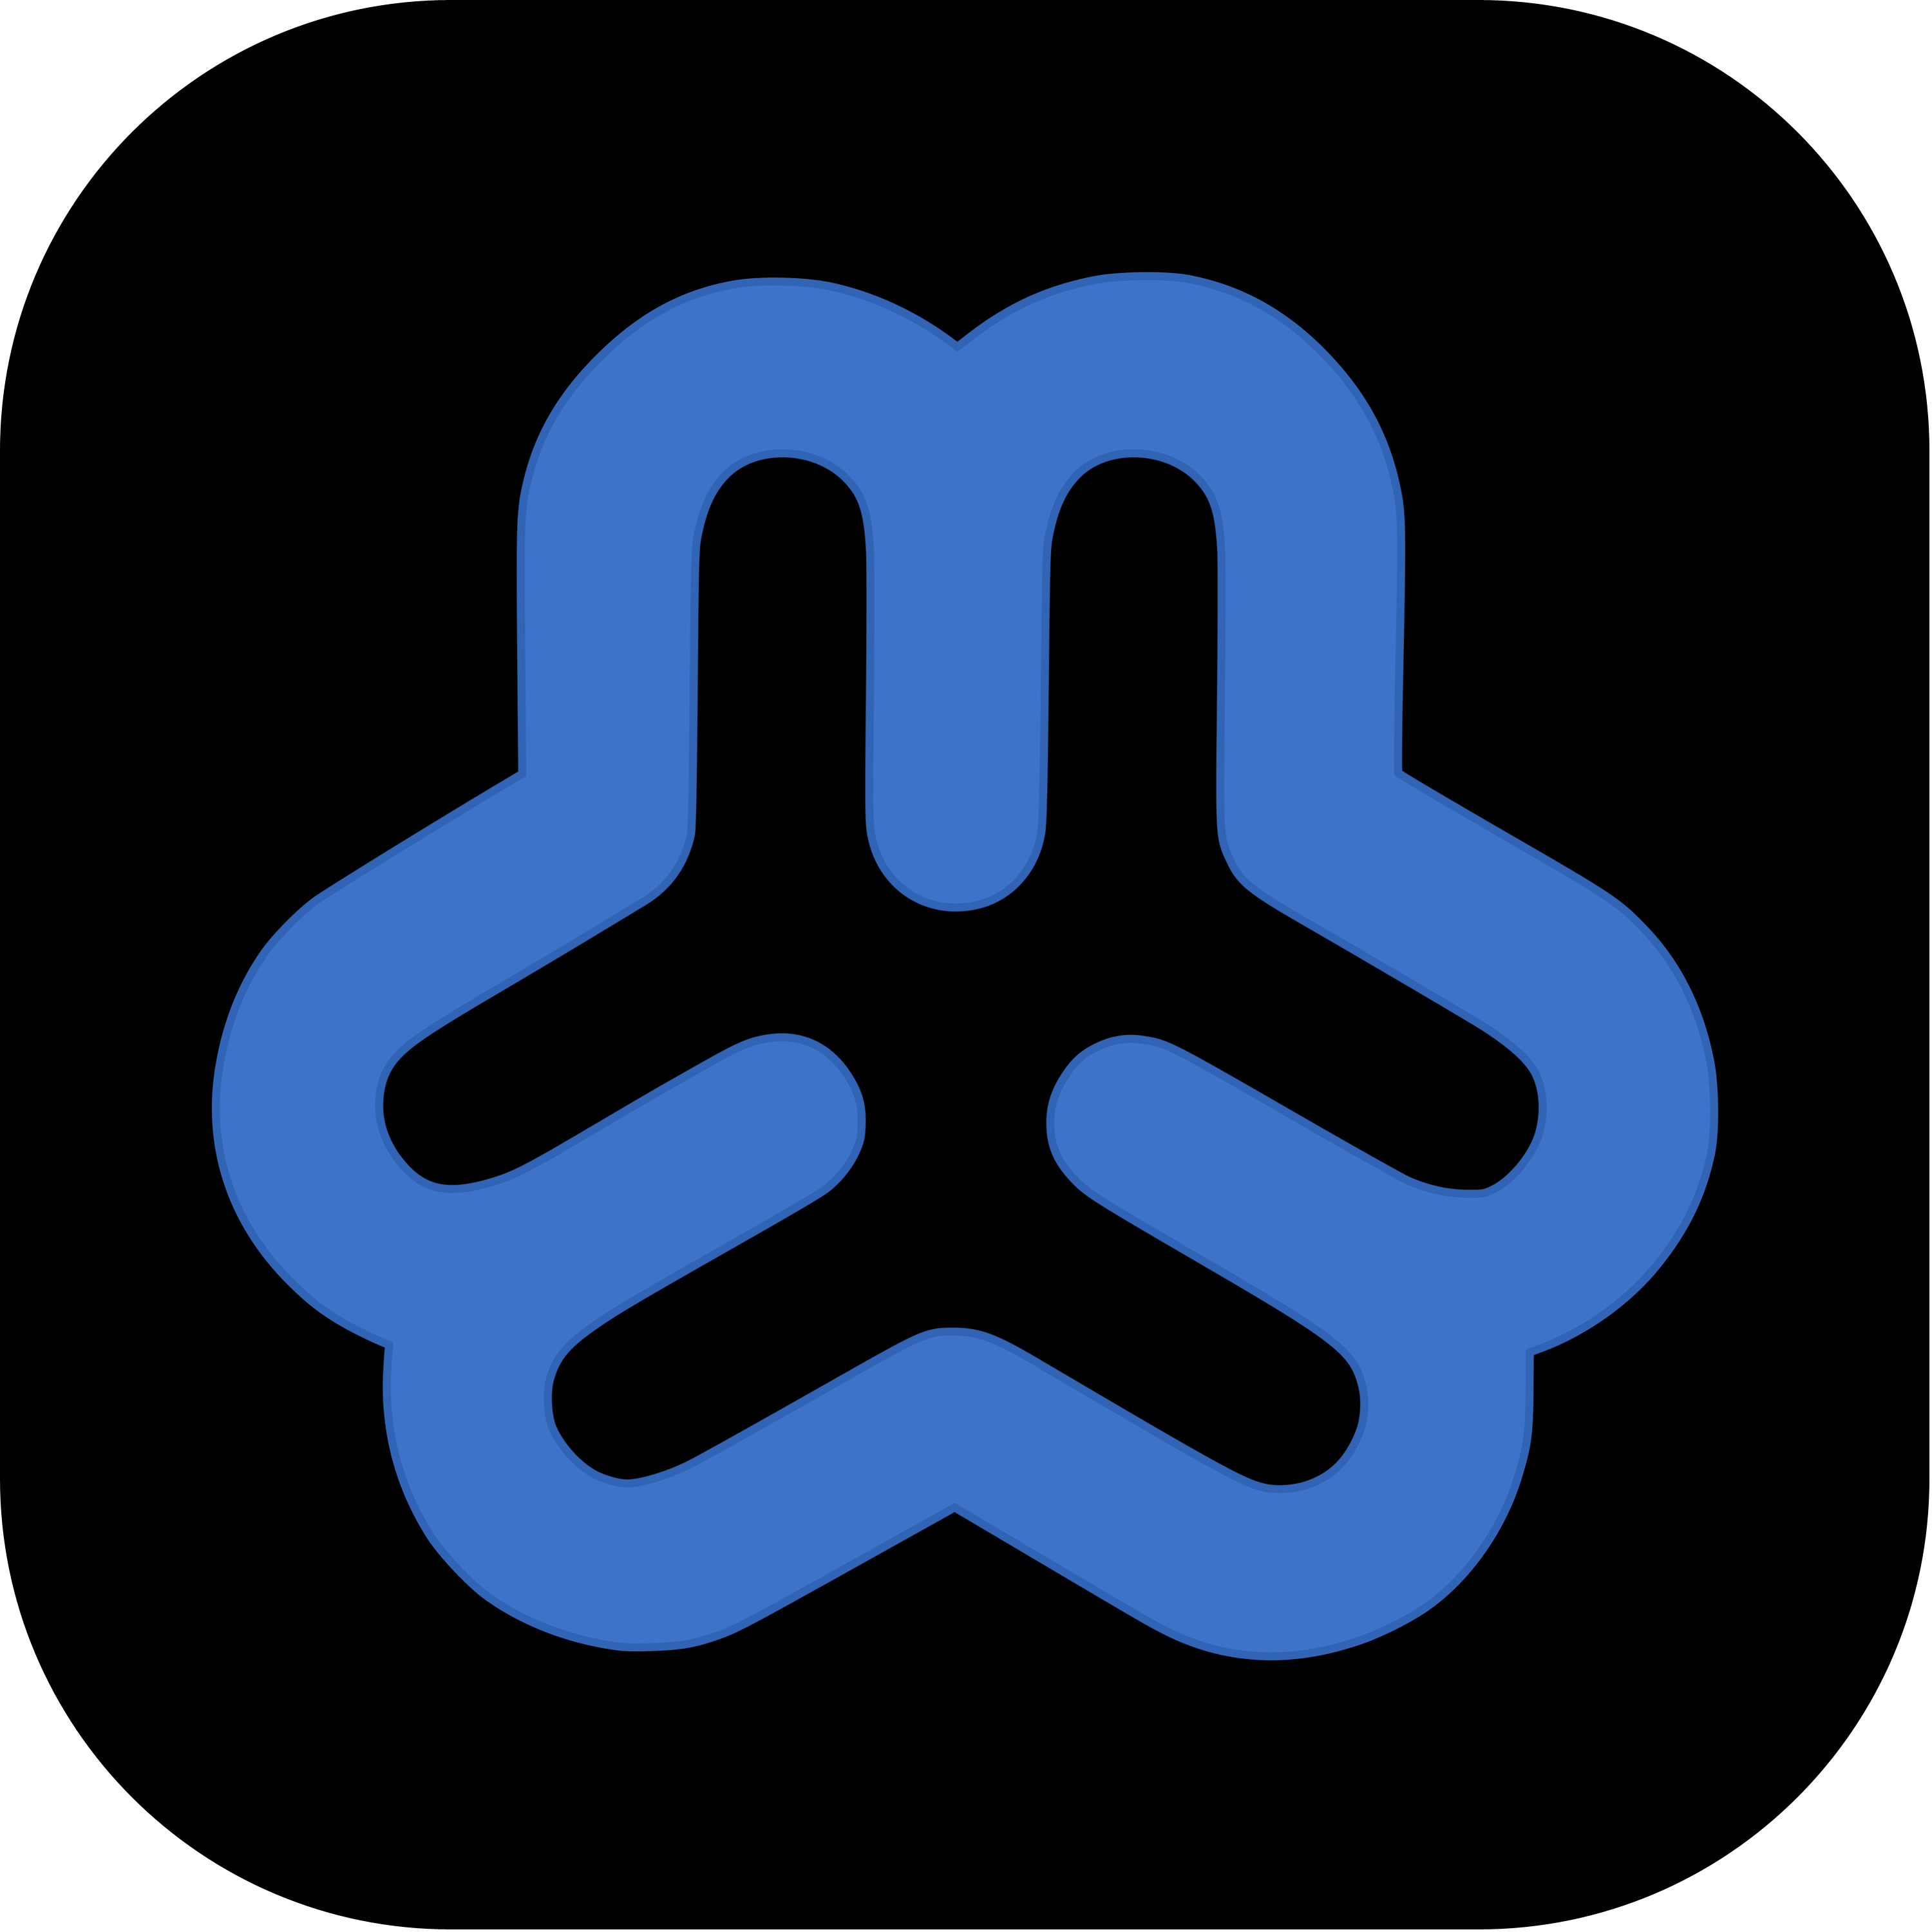 Webmin Logo Transparent Picture